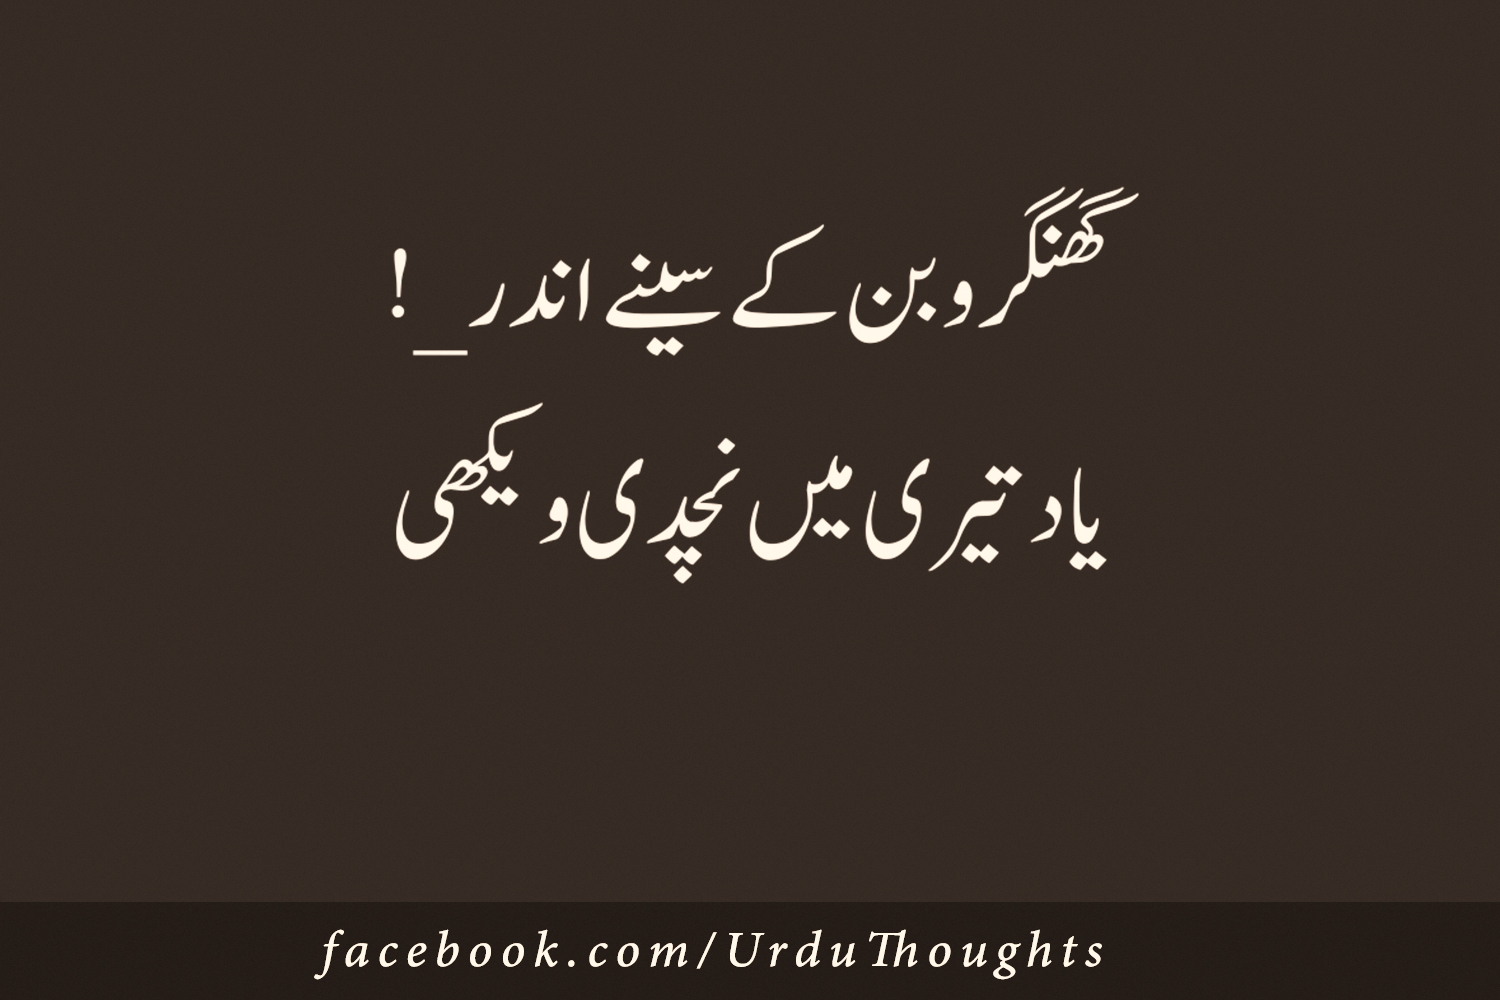 2-line-urdu-poetry-facebook